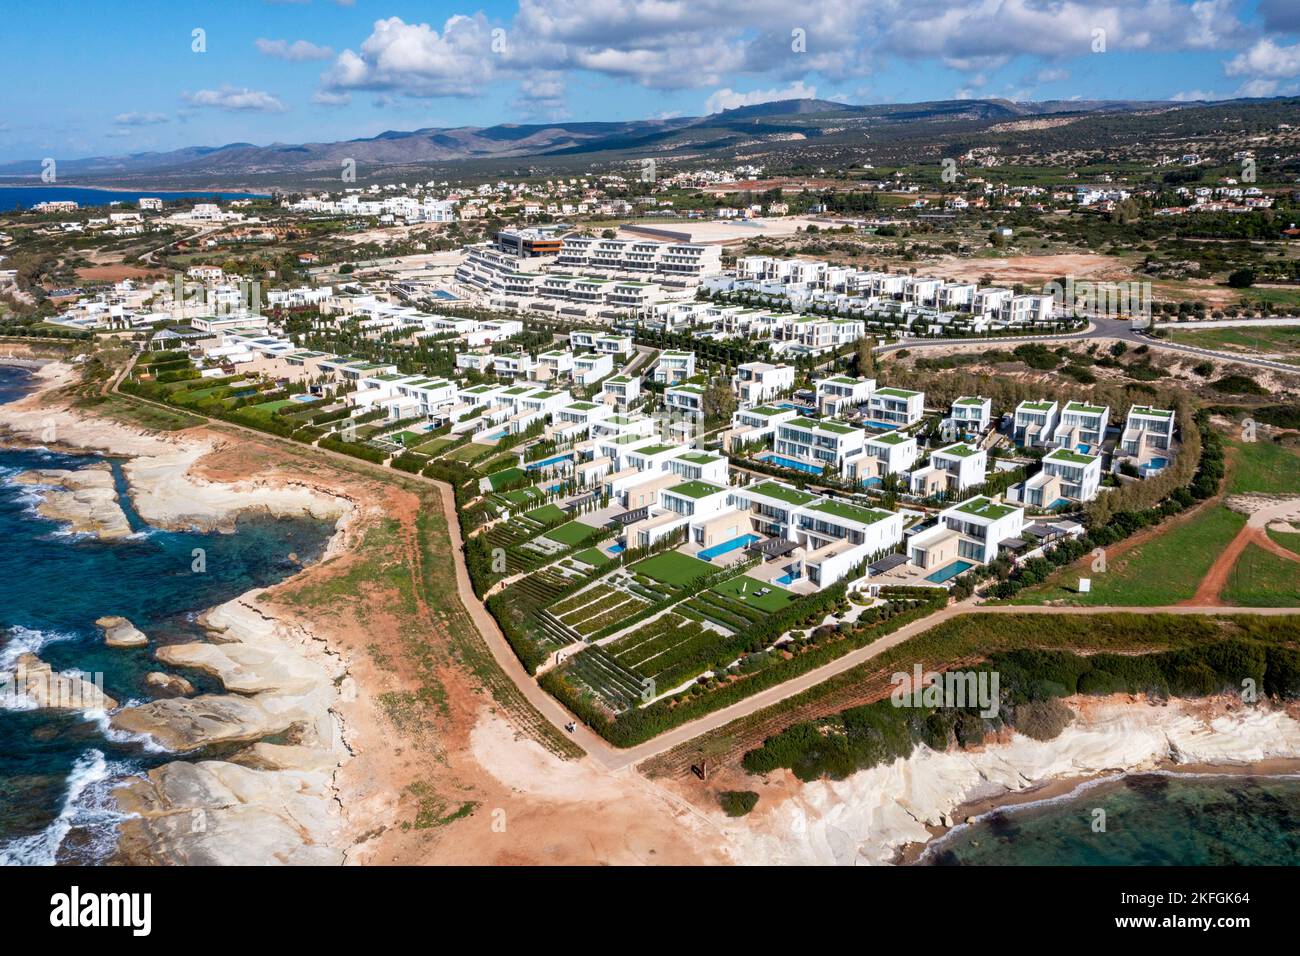 Vue aérienne des villas de luxe au bord de la mer au Cap St Georges Beach Club Resort, région de Paphos, Chypre. Banque D'Images